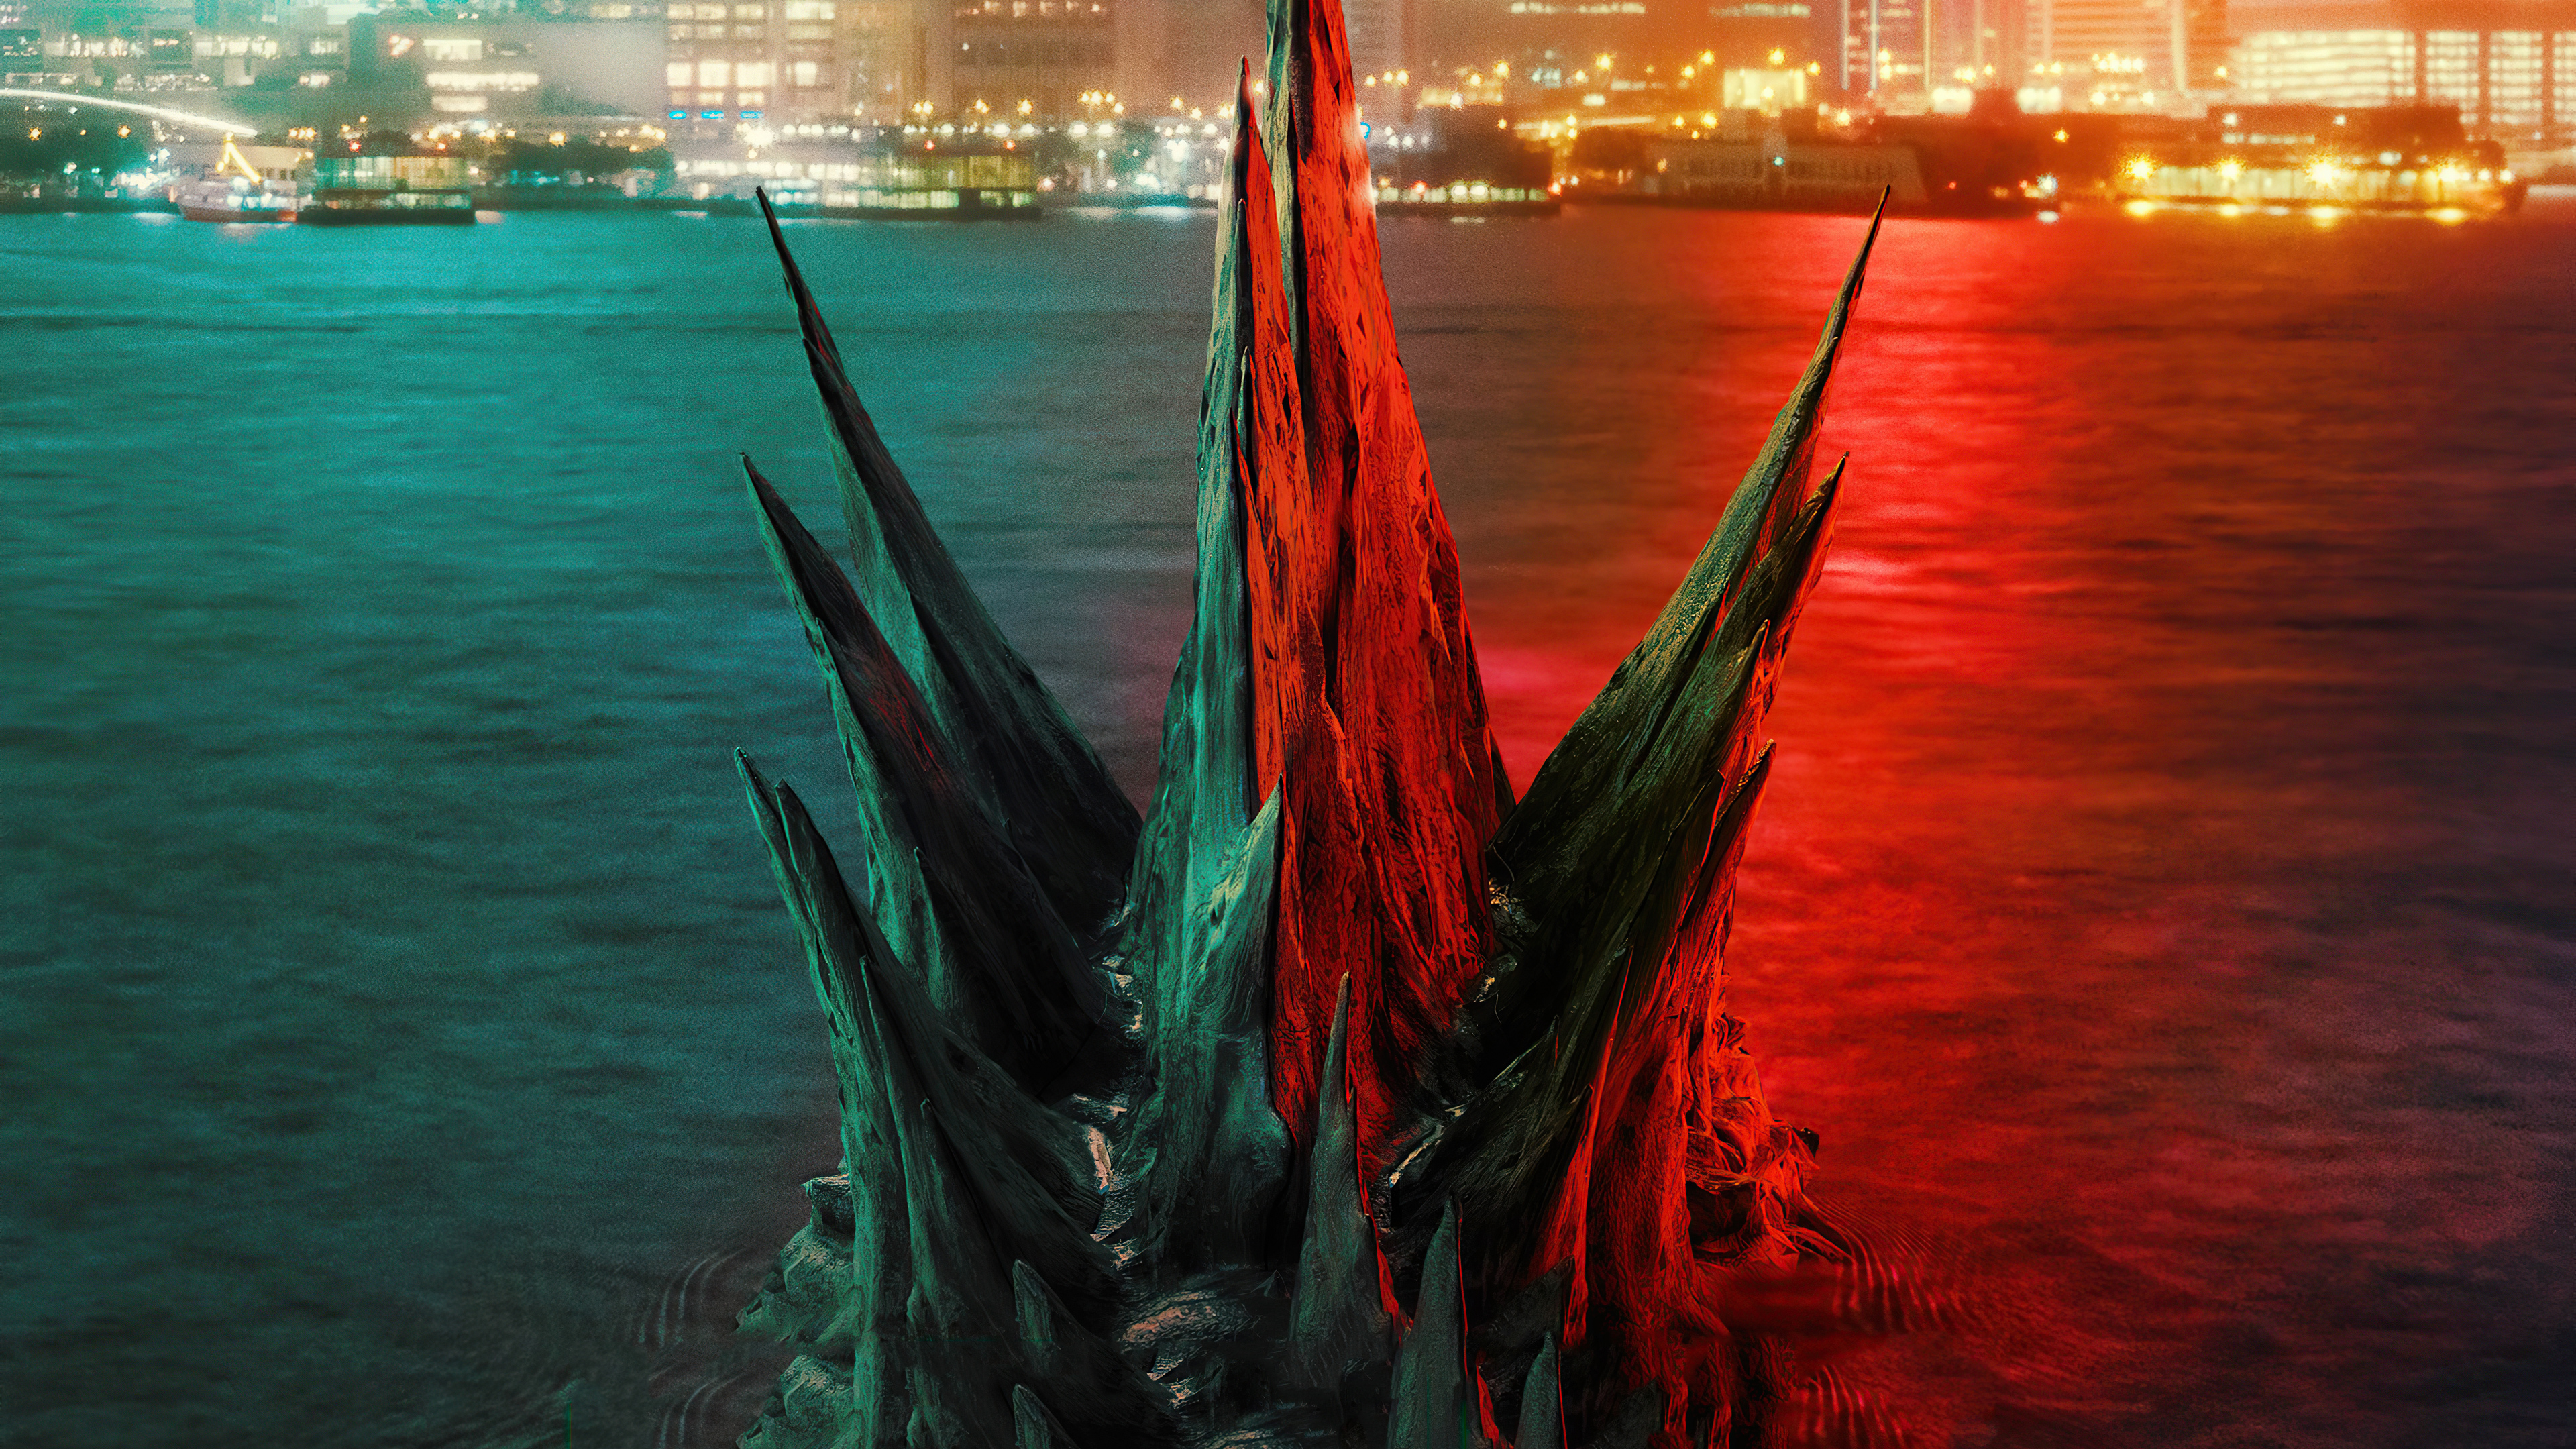 Movie Godzilla vs Kong HD Wallpaper | Background Image